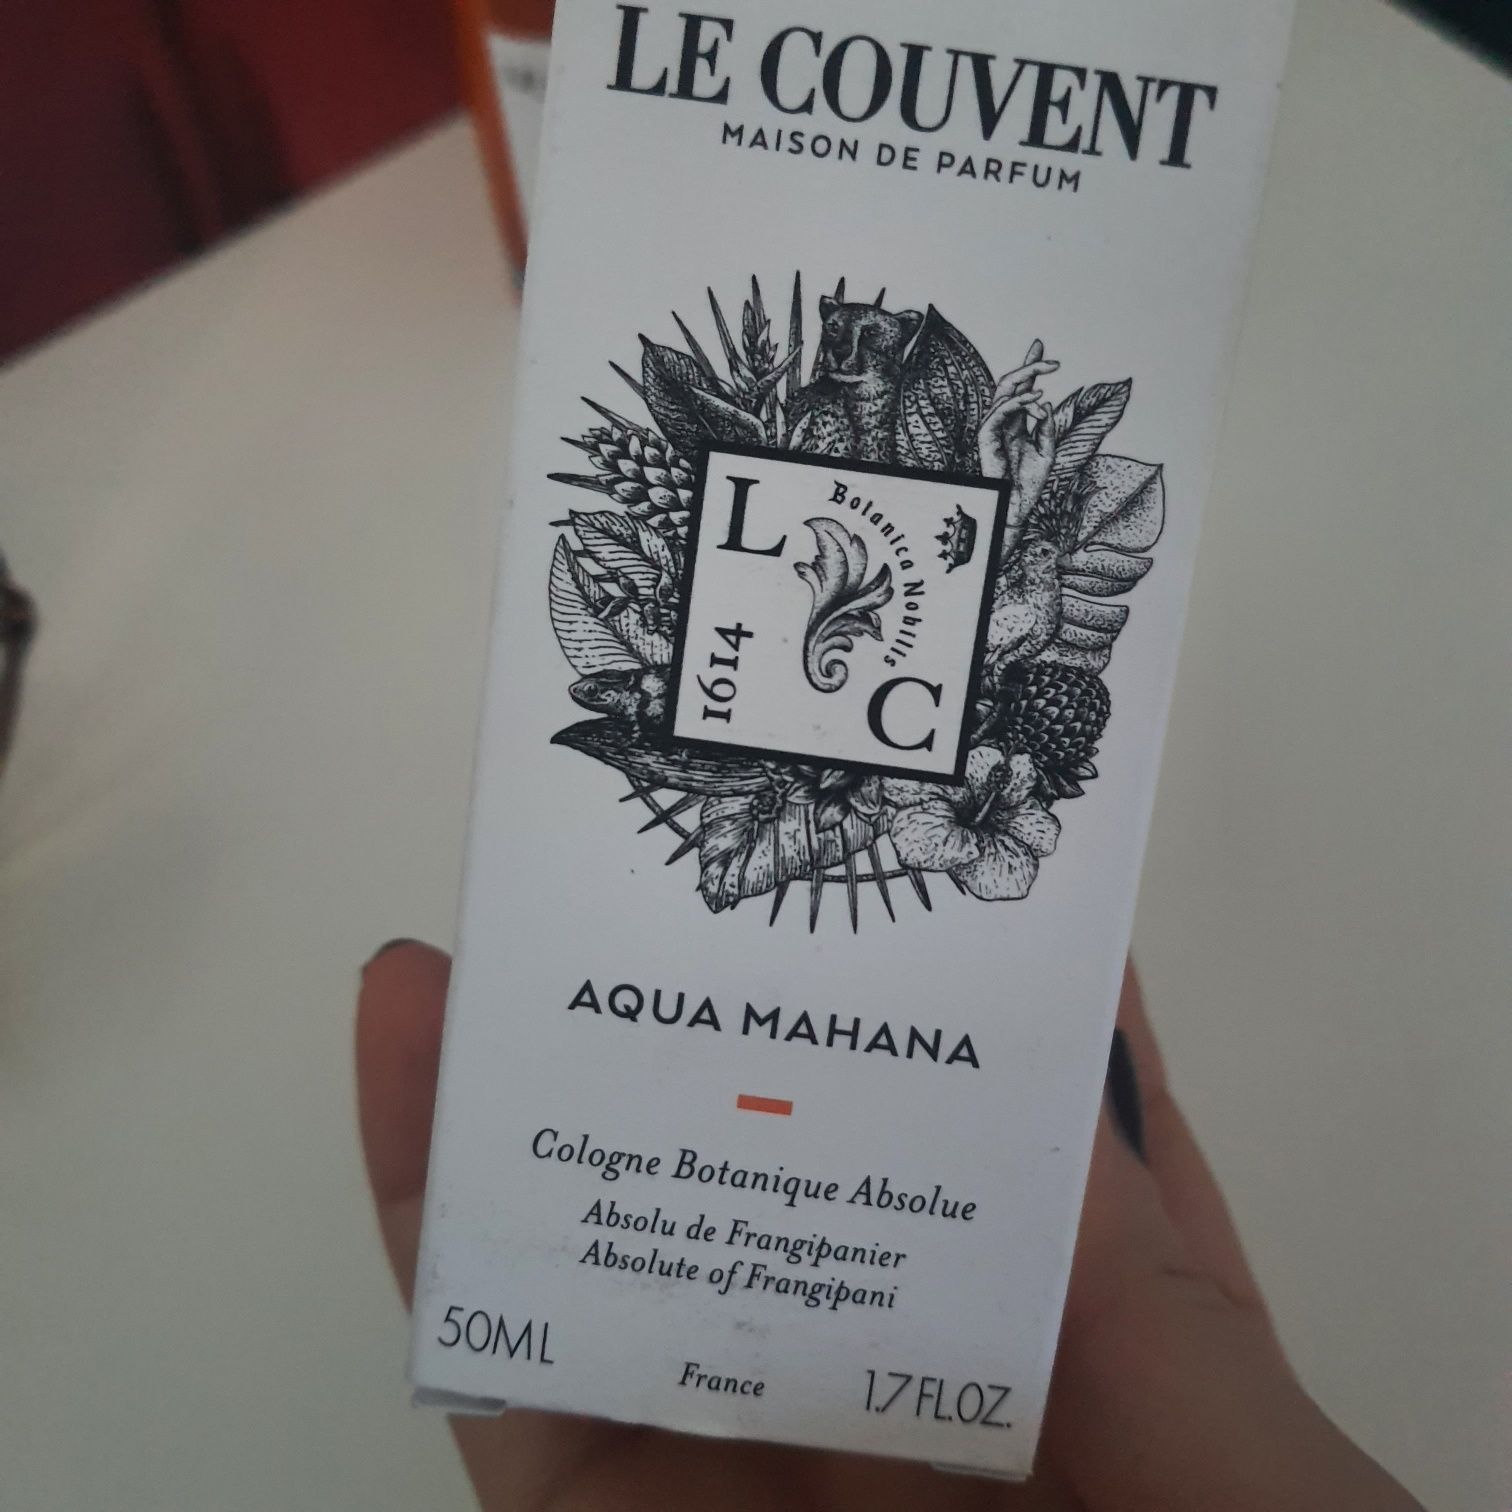 Aqua Mahana Le Couvent Maison de Parfum 50 мл